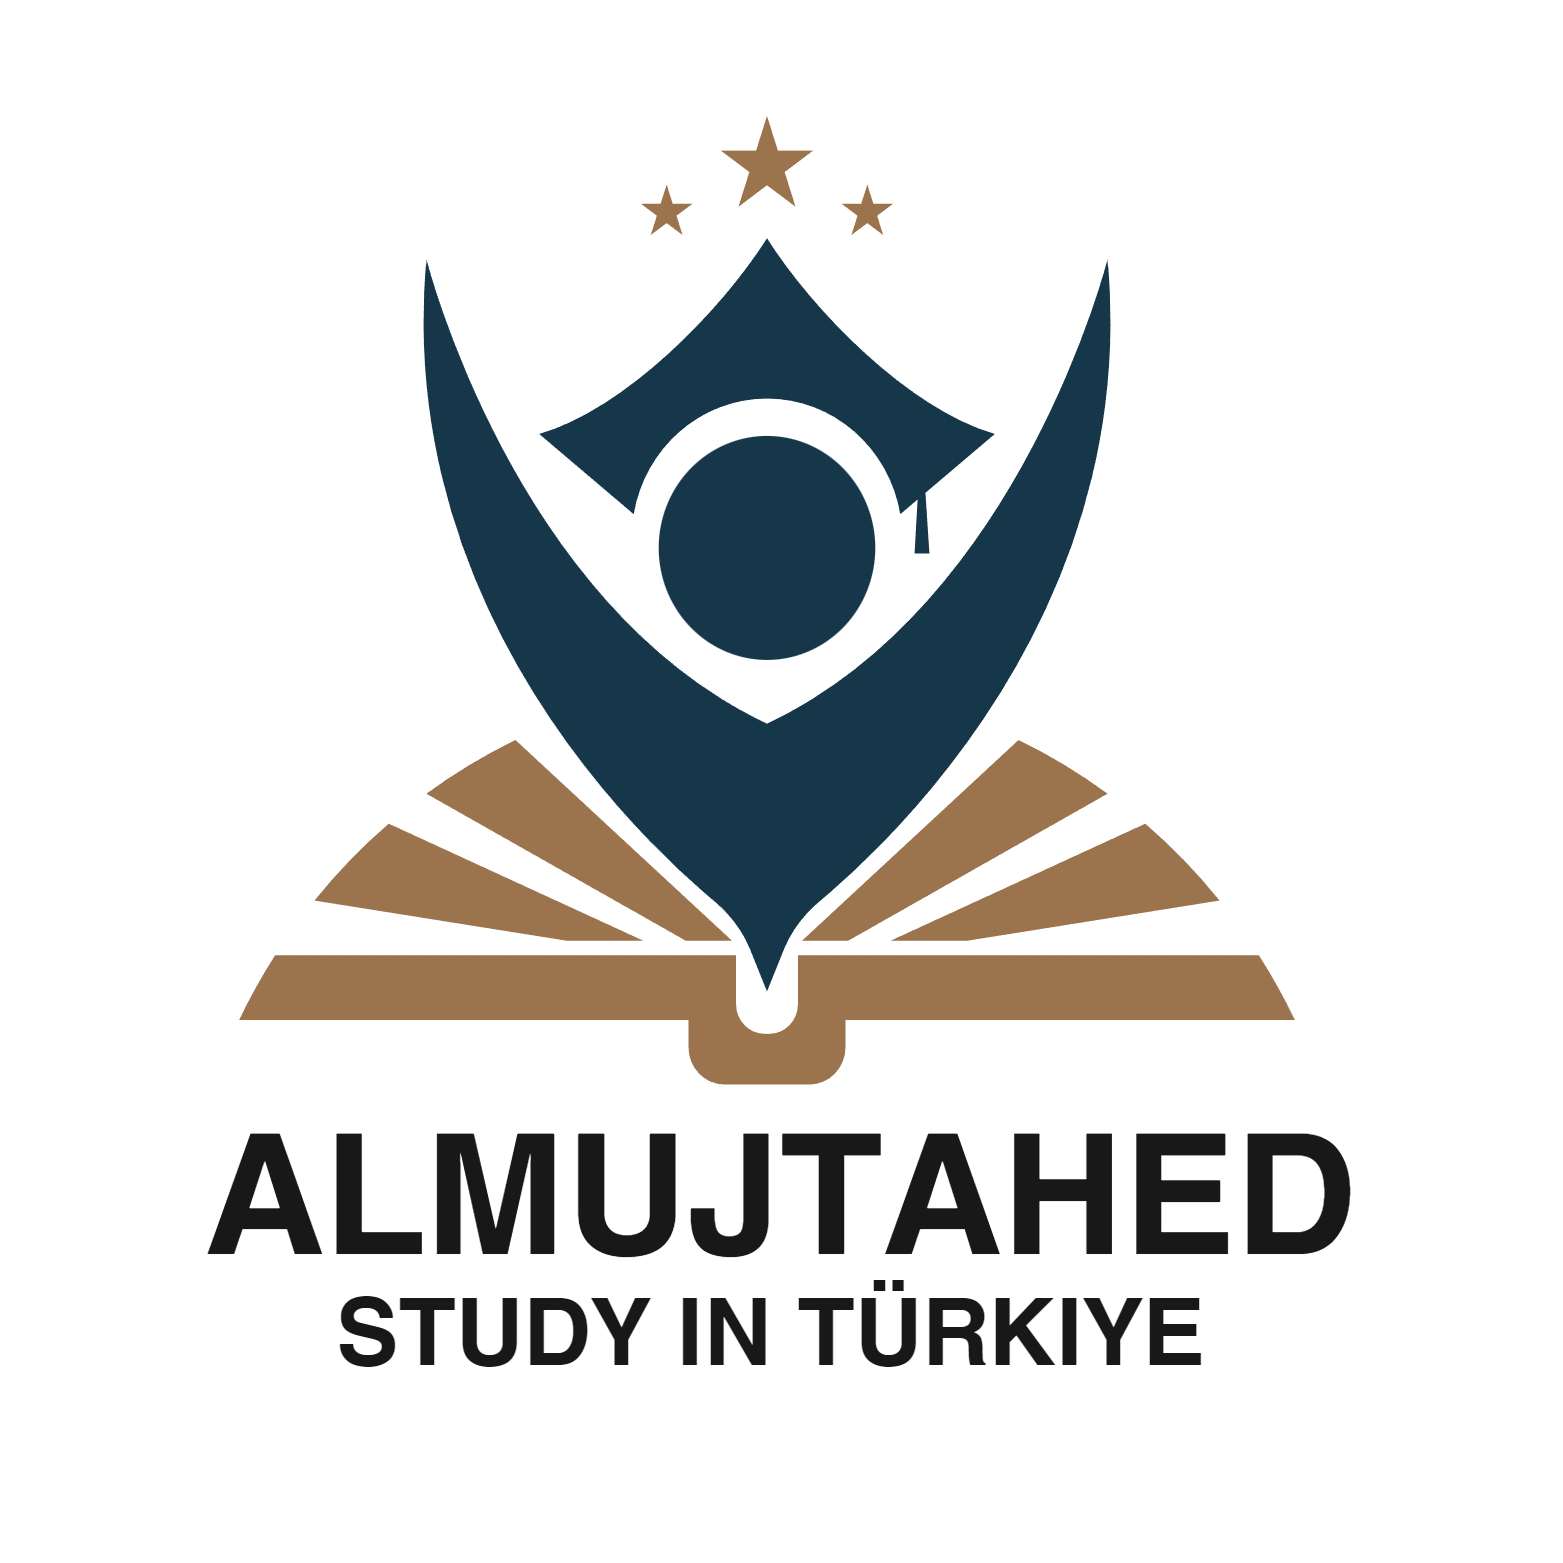 Al-Mujtahid for study in Turkey